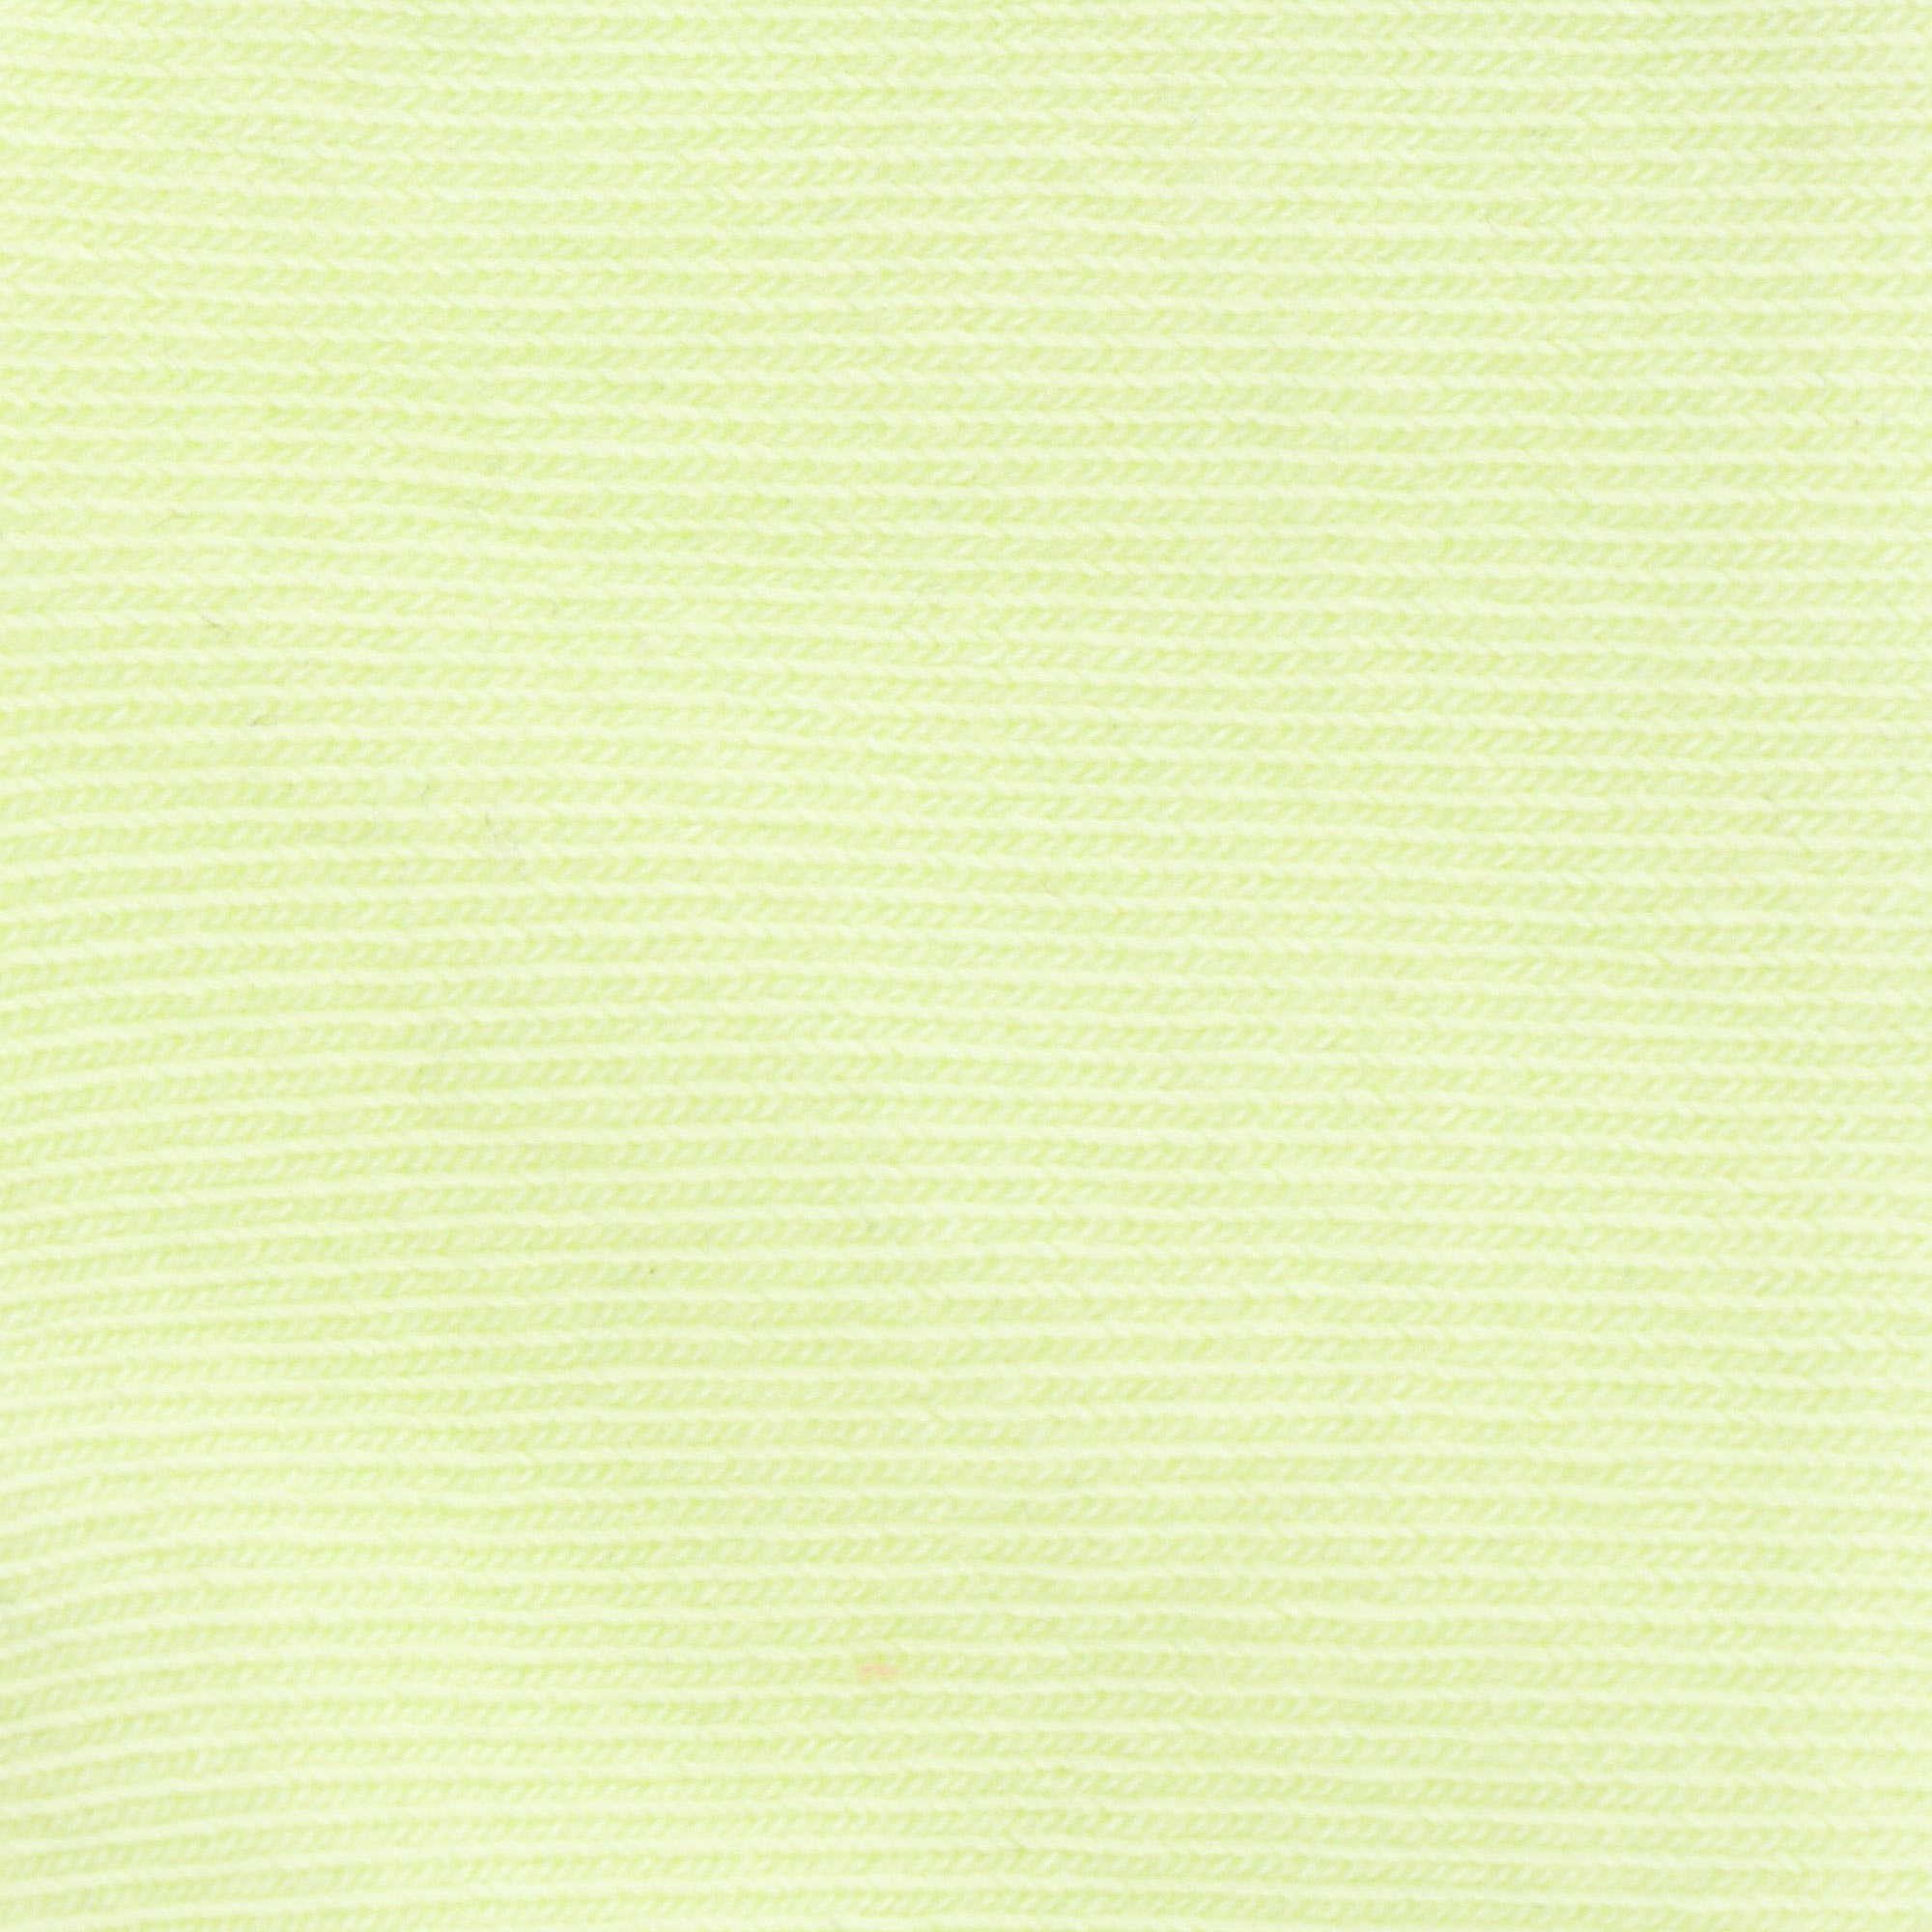 Носки женские Pierre Сardin cr maya светло зеленый р 23 35-37, цвет светло-зеленый, размер 35/37 - фото 2